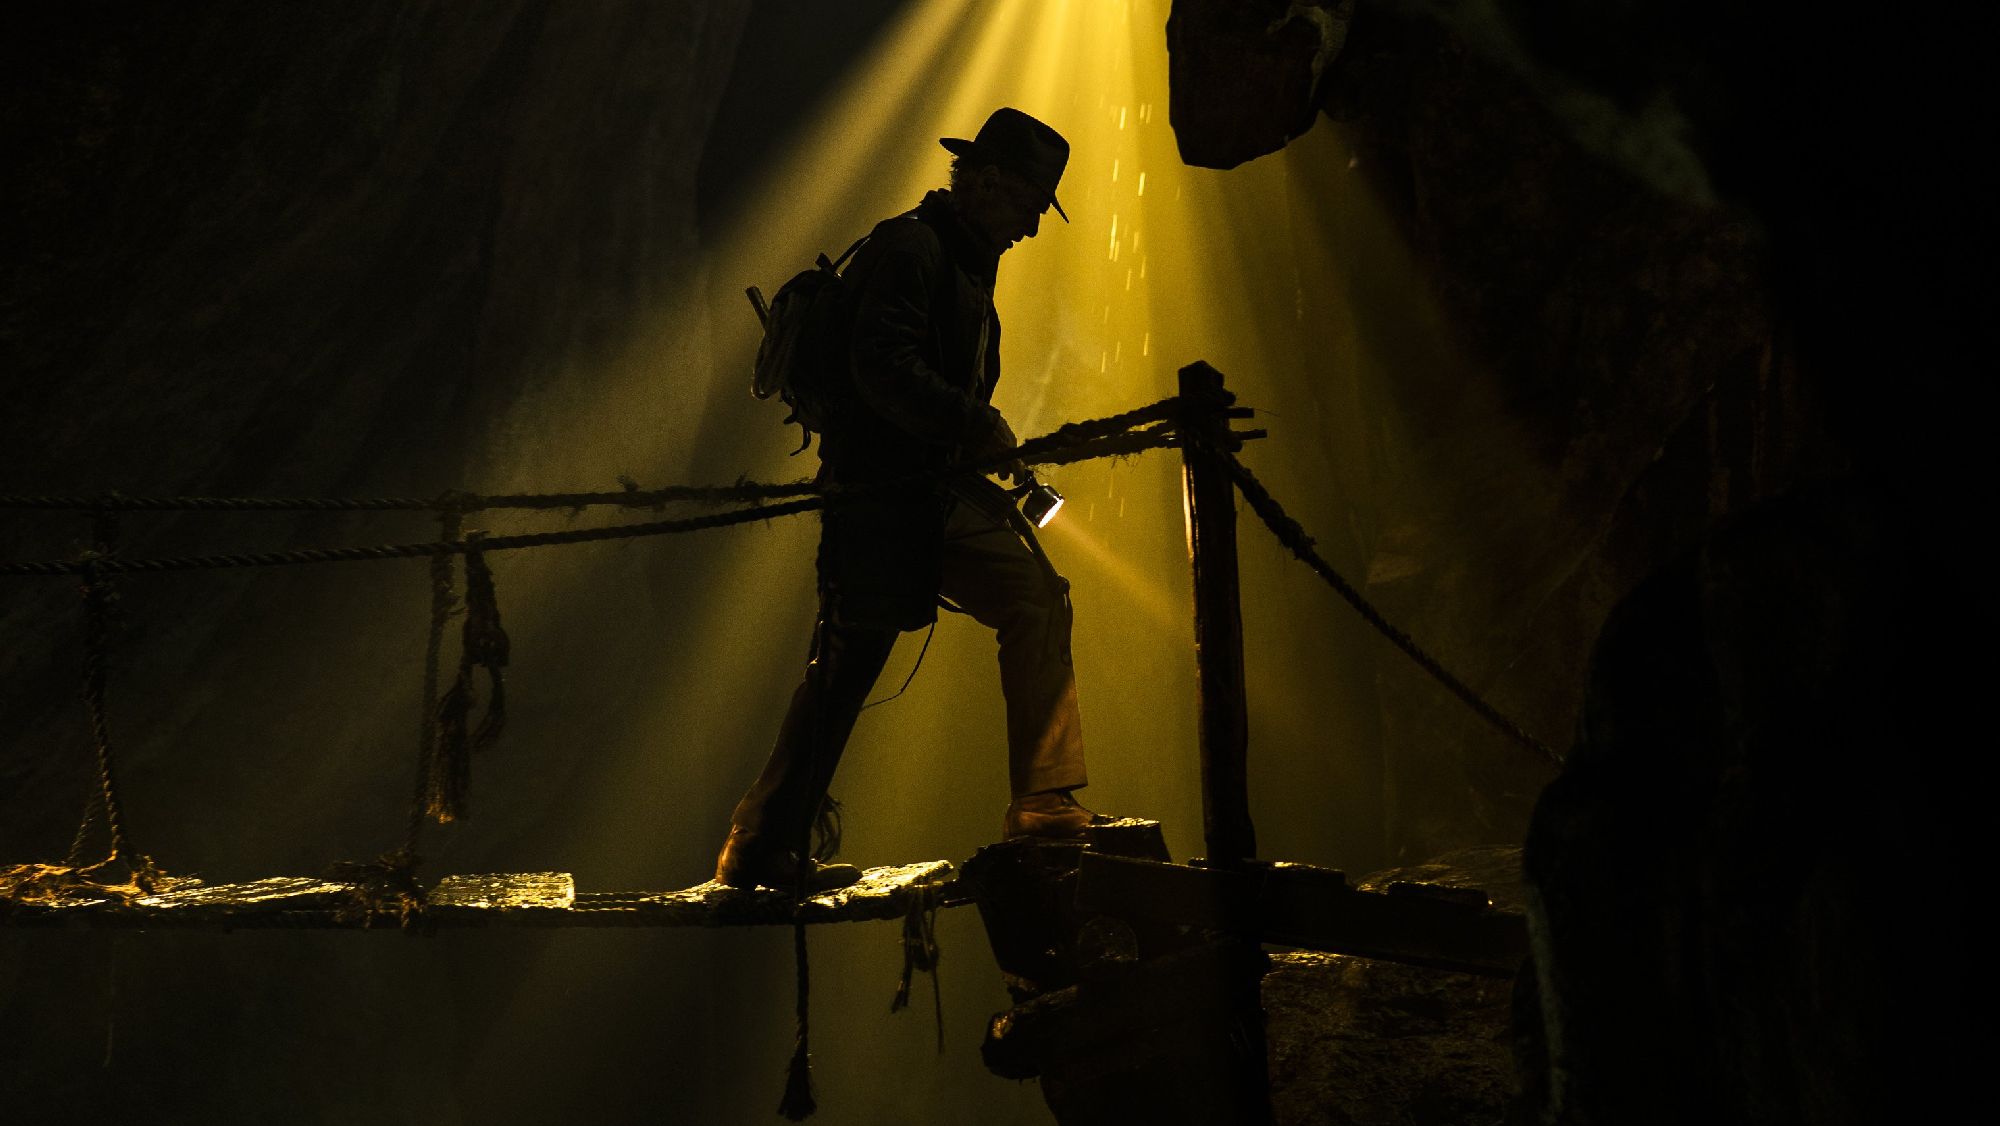 Esta es la primera imagen de la quinta entrega de "Indiana Jones" que se estrenará próximamente. (Disney Plus)